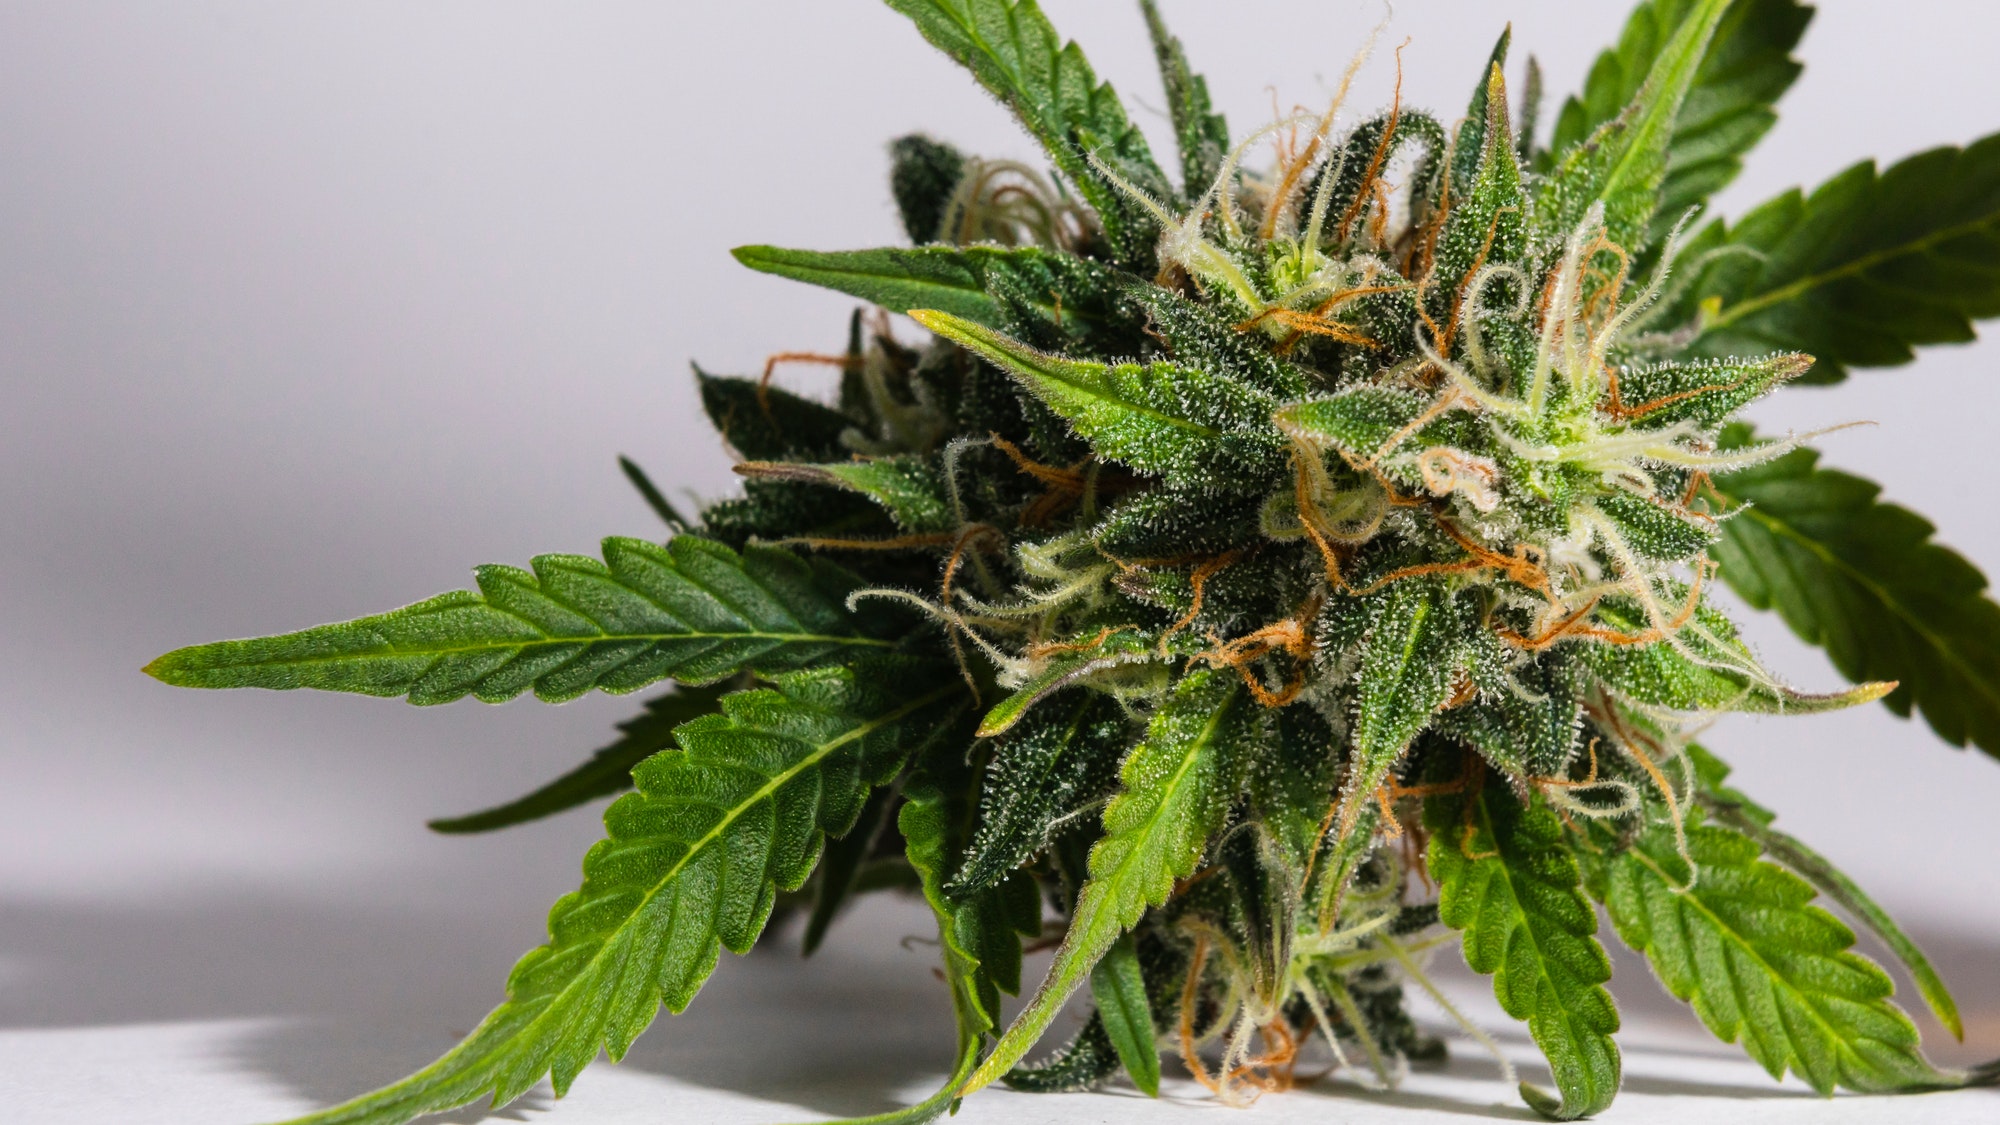 Macro close-up of fresh medical marijuana buds growing indoors